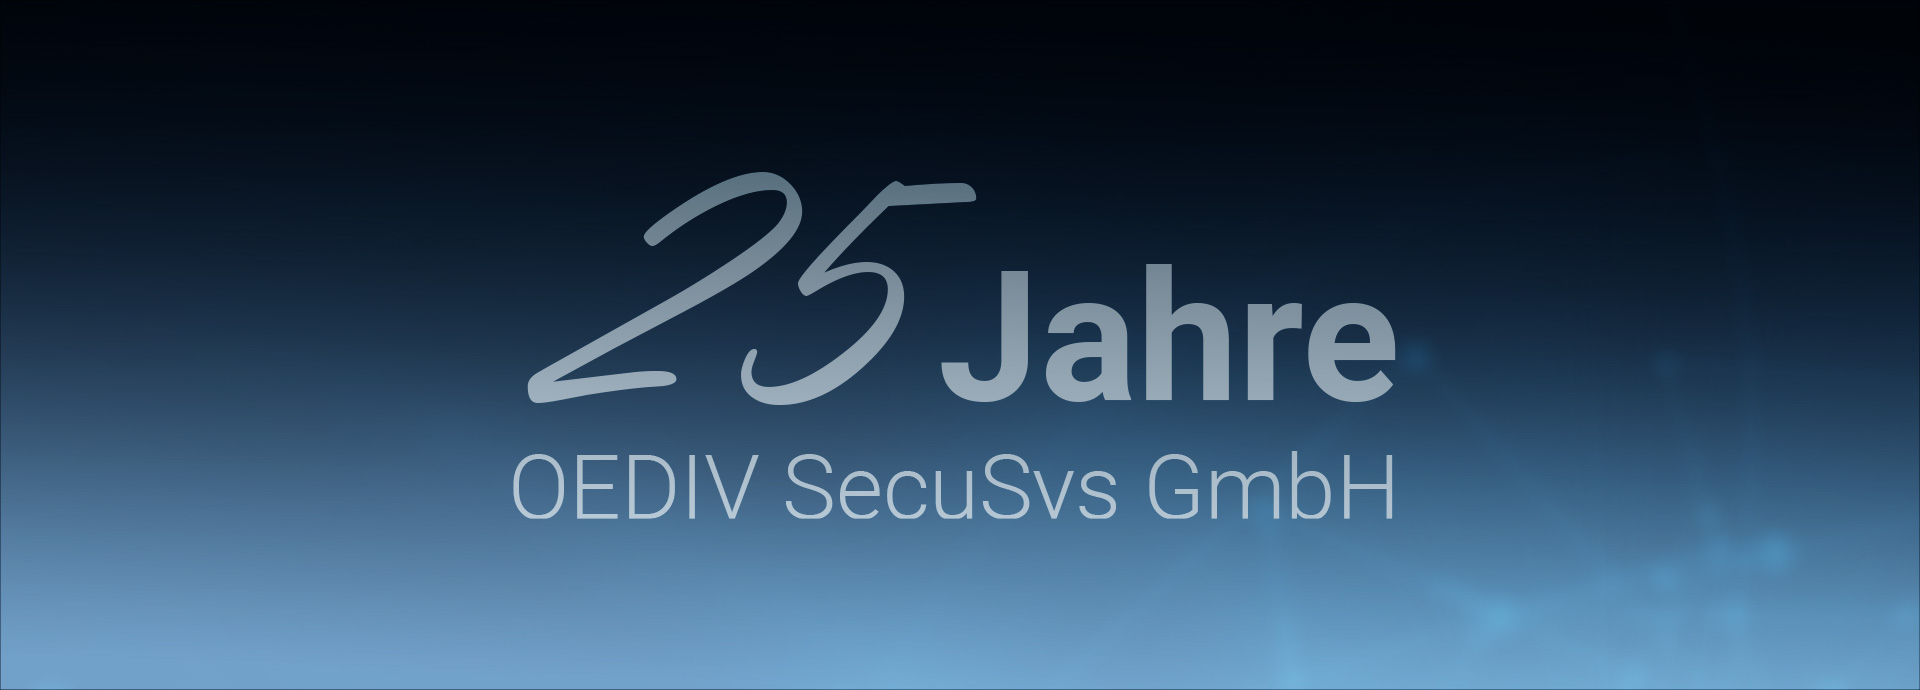 OEDIV SecuSys feiert 25. Firmenjubiläum